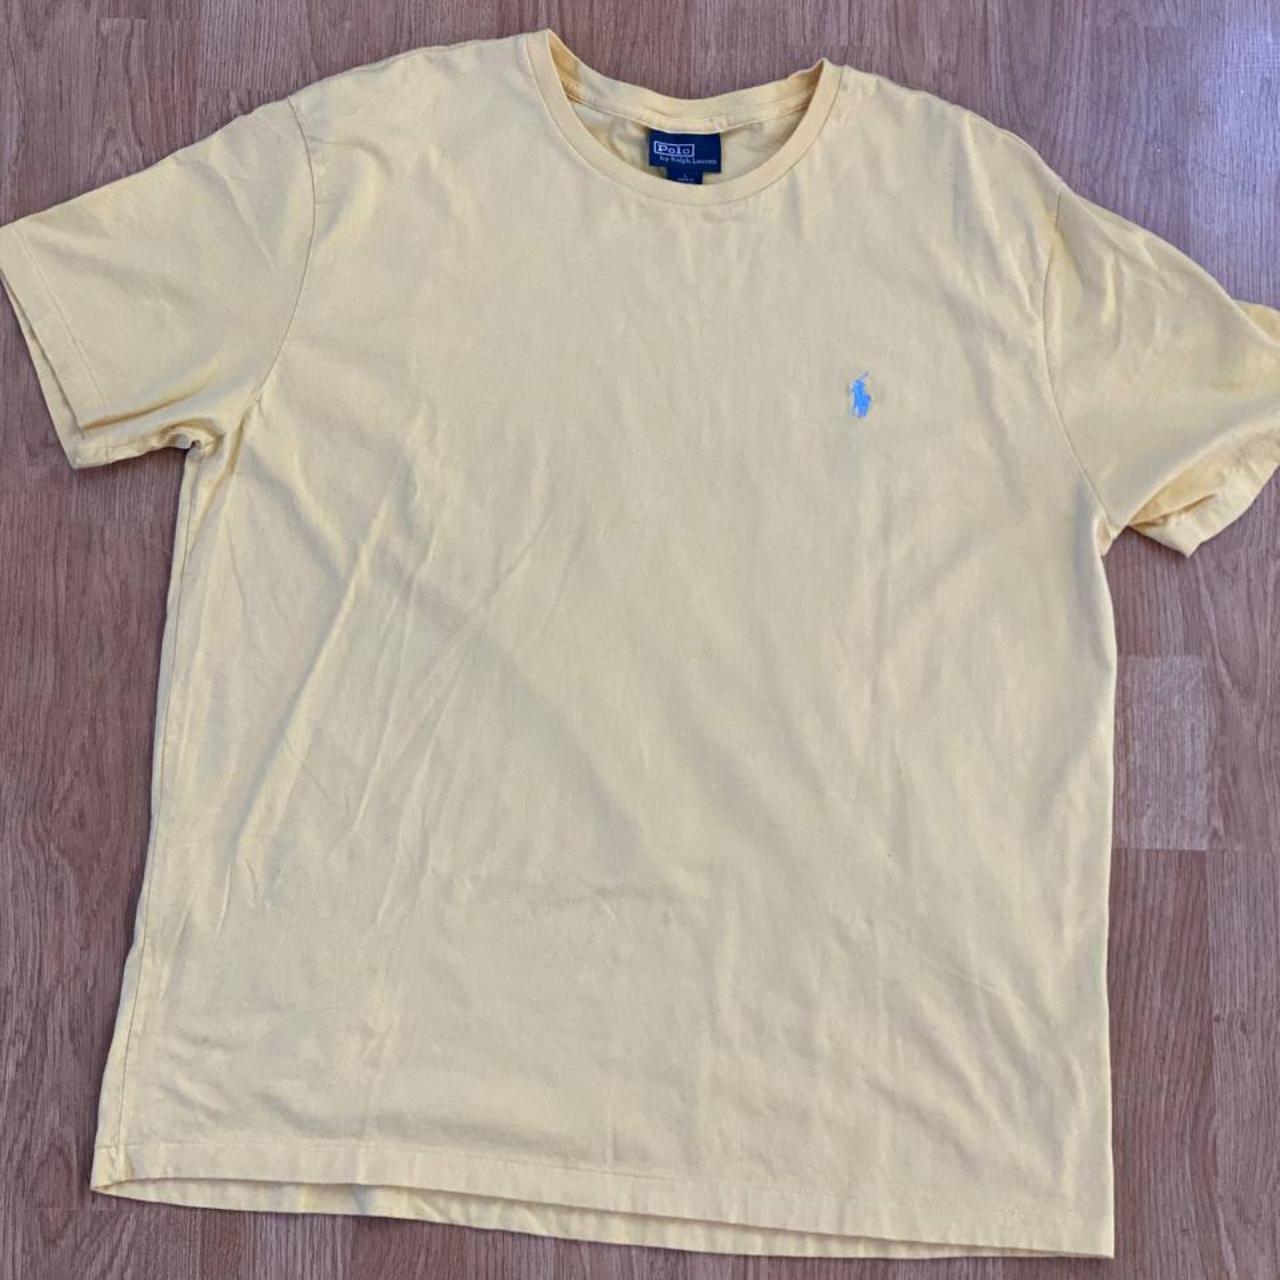 Polo Ralph Lauren T-shirt - Yellow - Men’s size L -... - Depop